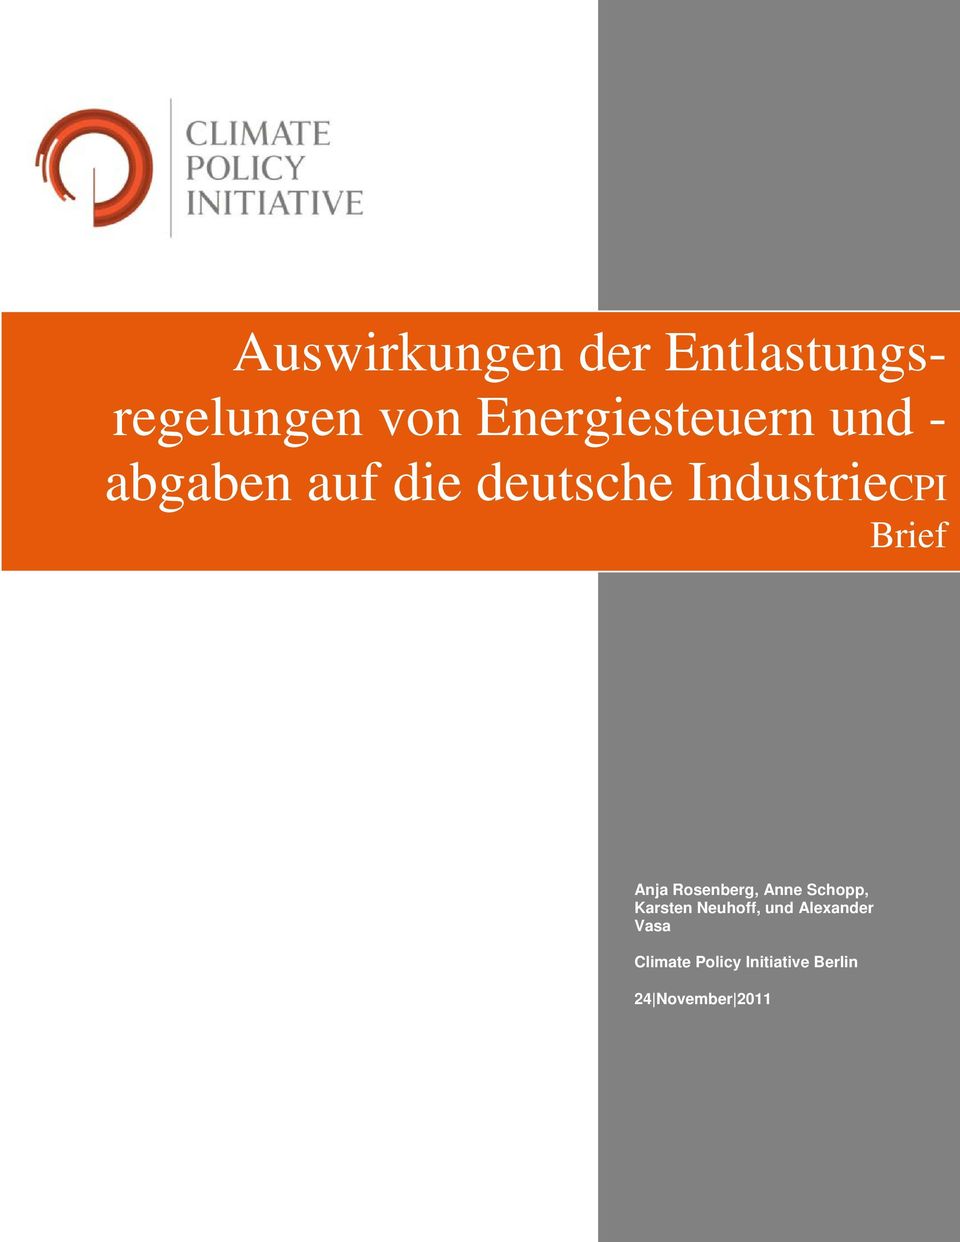 IndustrieCPI Brief Anja Rosenberg, Anne Schopp, Karsten